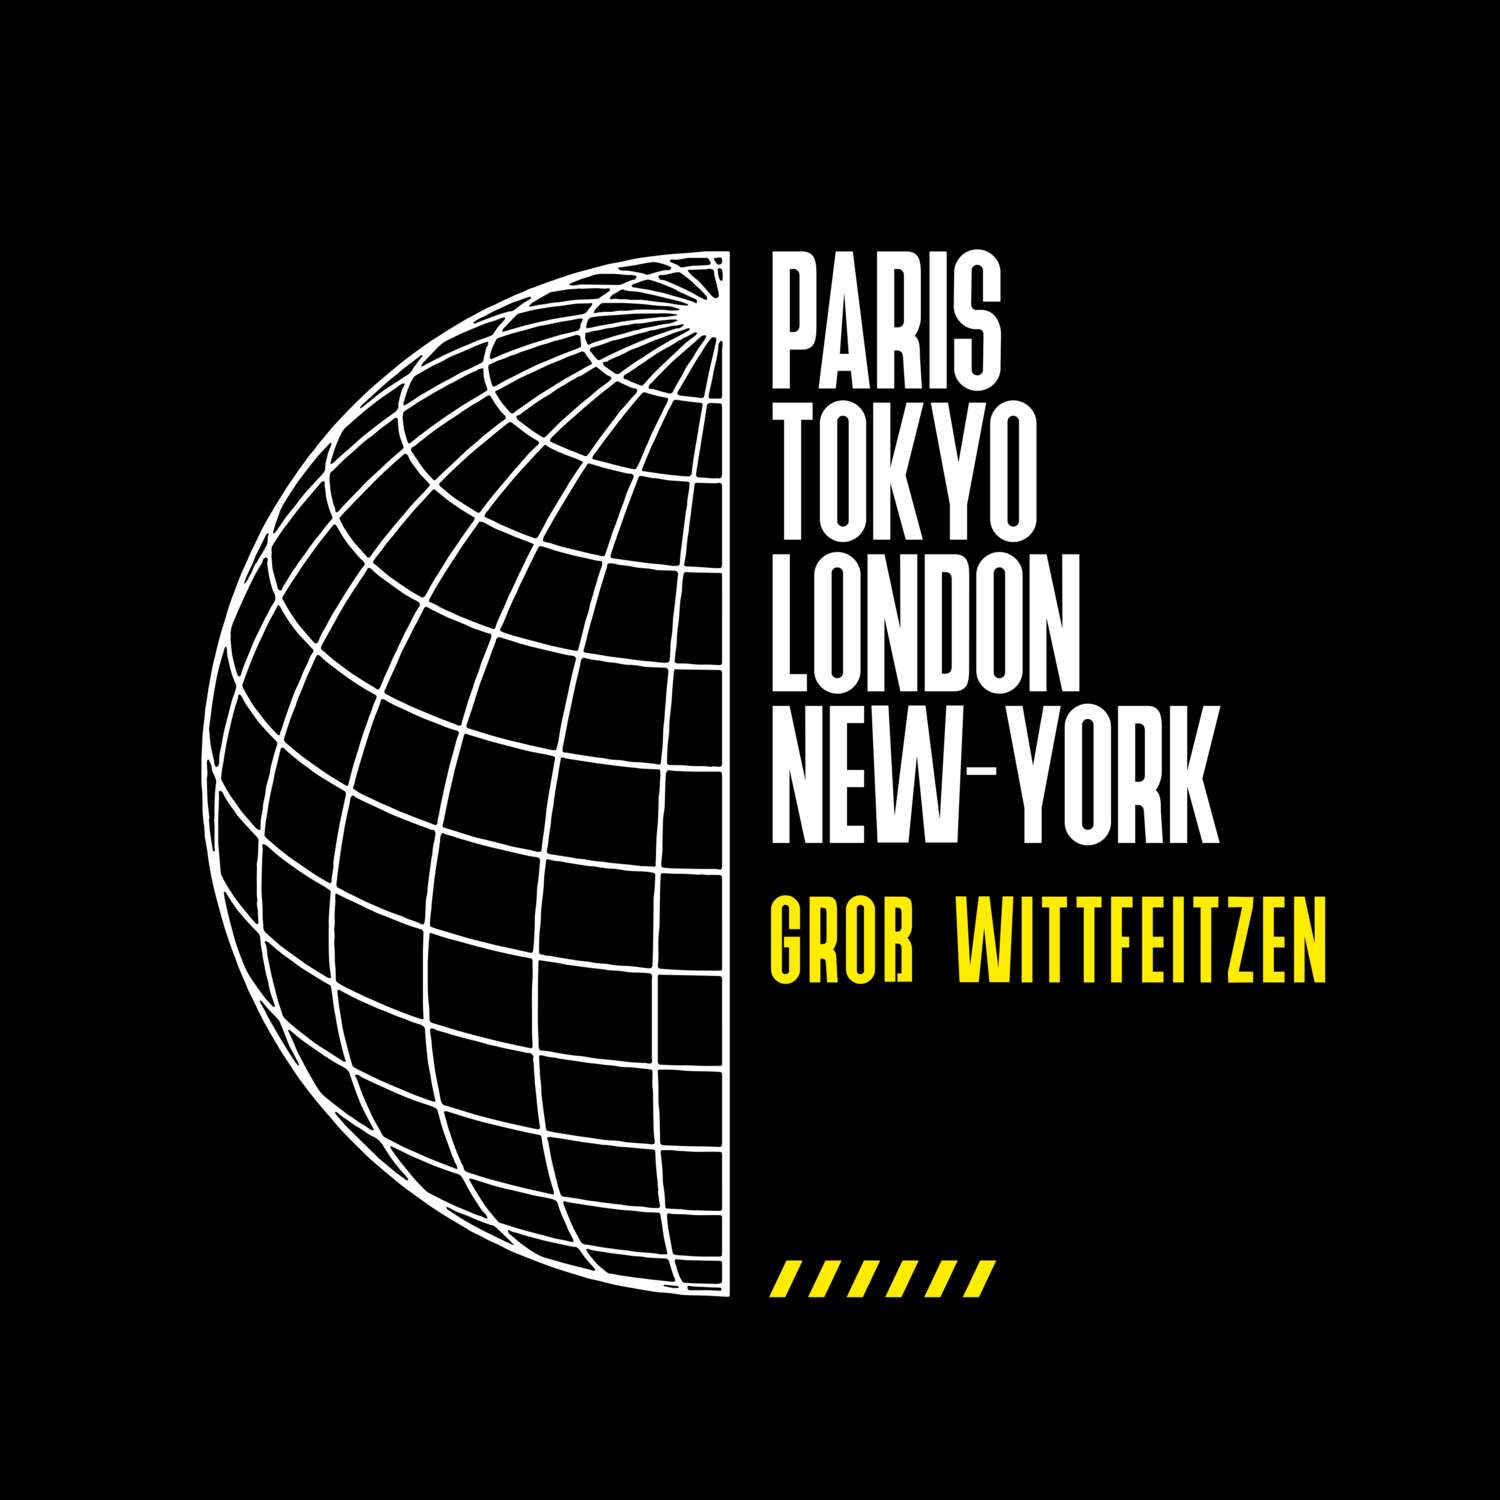 Groß Wittfeitzen T-Shirt »Paris Tokyo London«